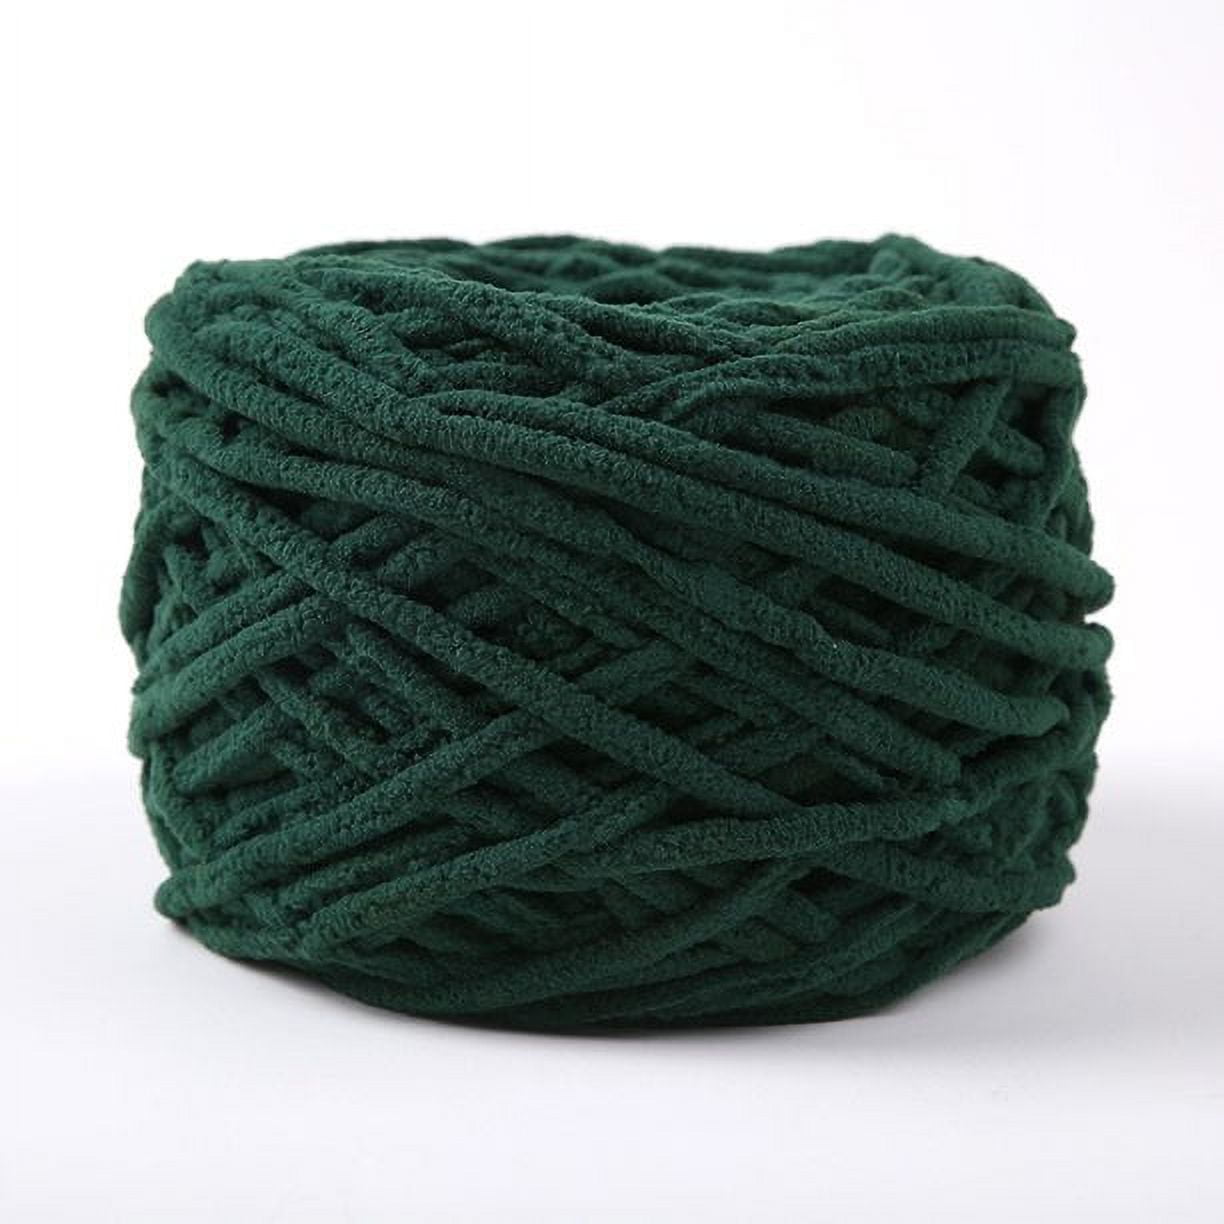  Chunky Knit Chenille Yarn Dark Green,Chunky Yarn Bulky